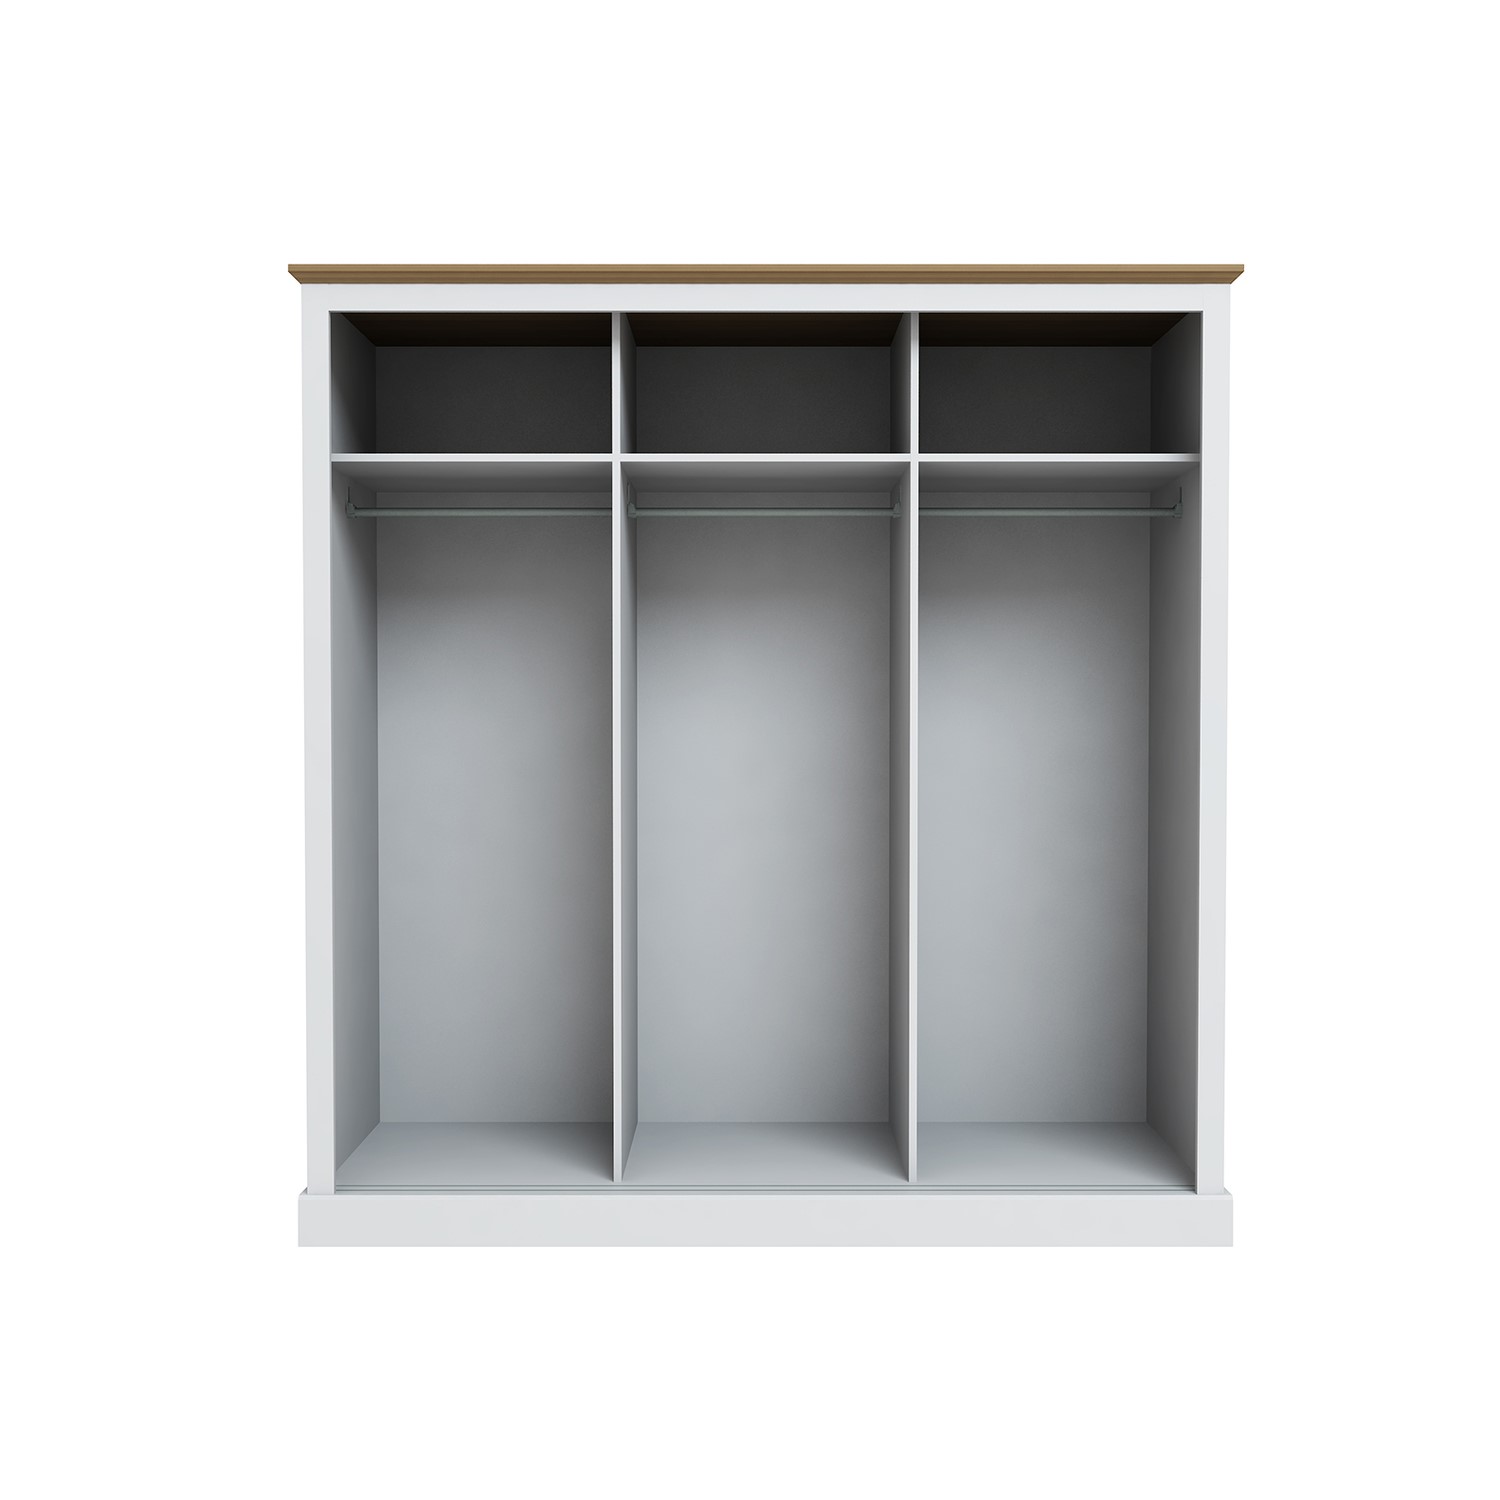 Read more about Lpd white mirrored 3 door sliding wardrobe devon